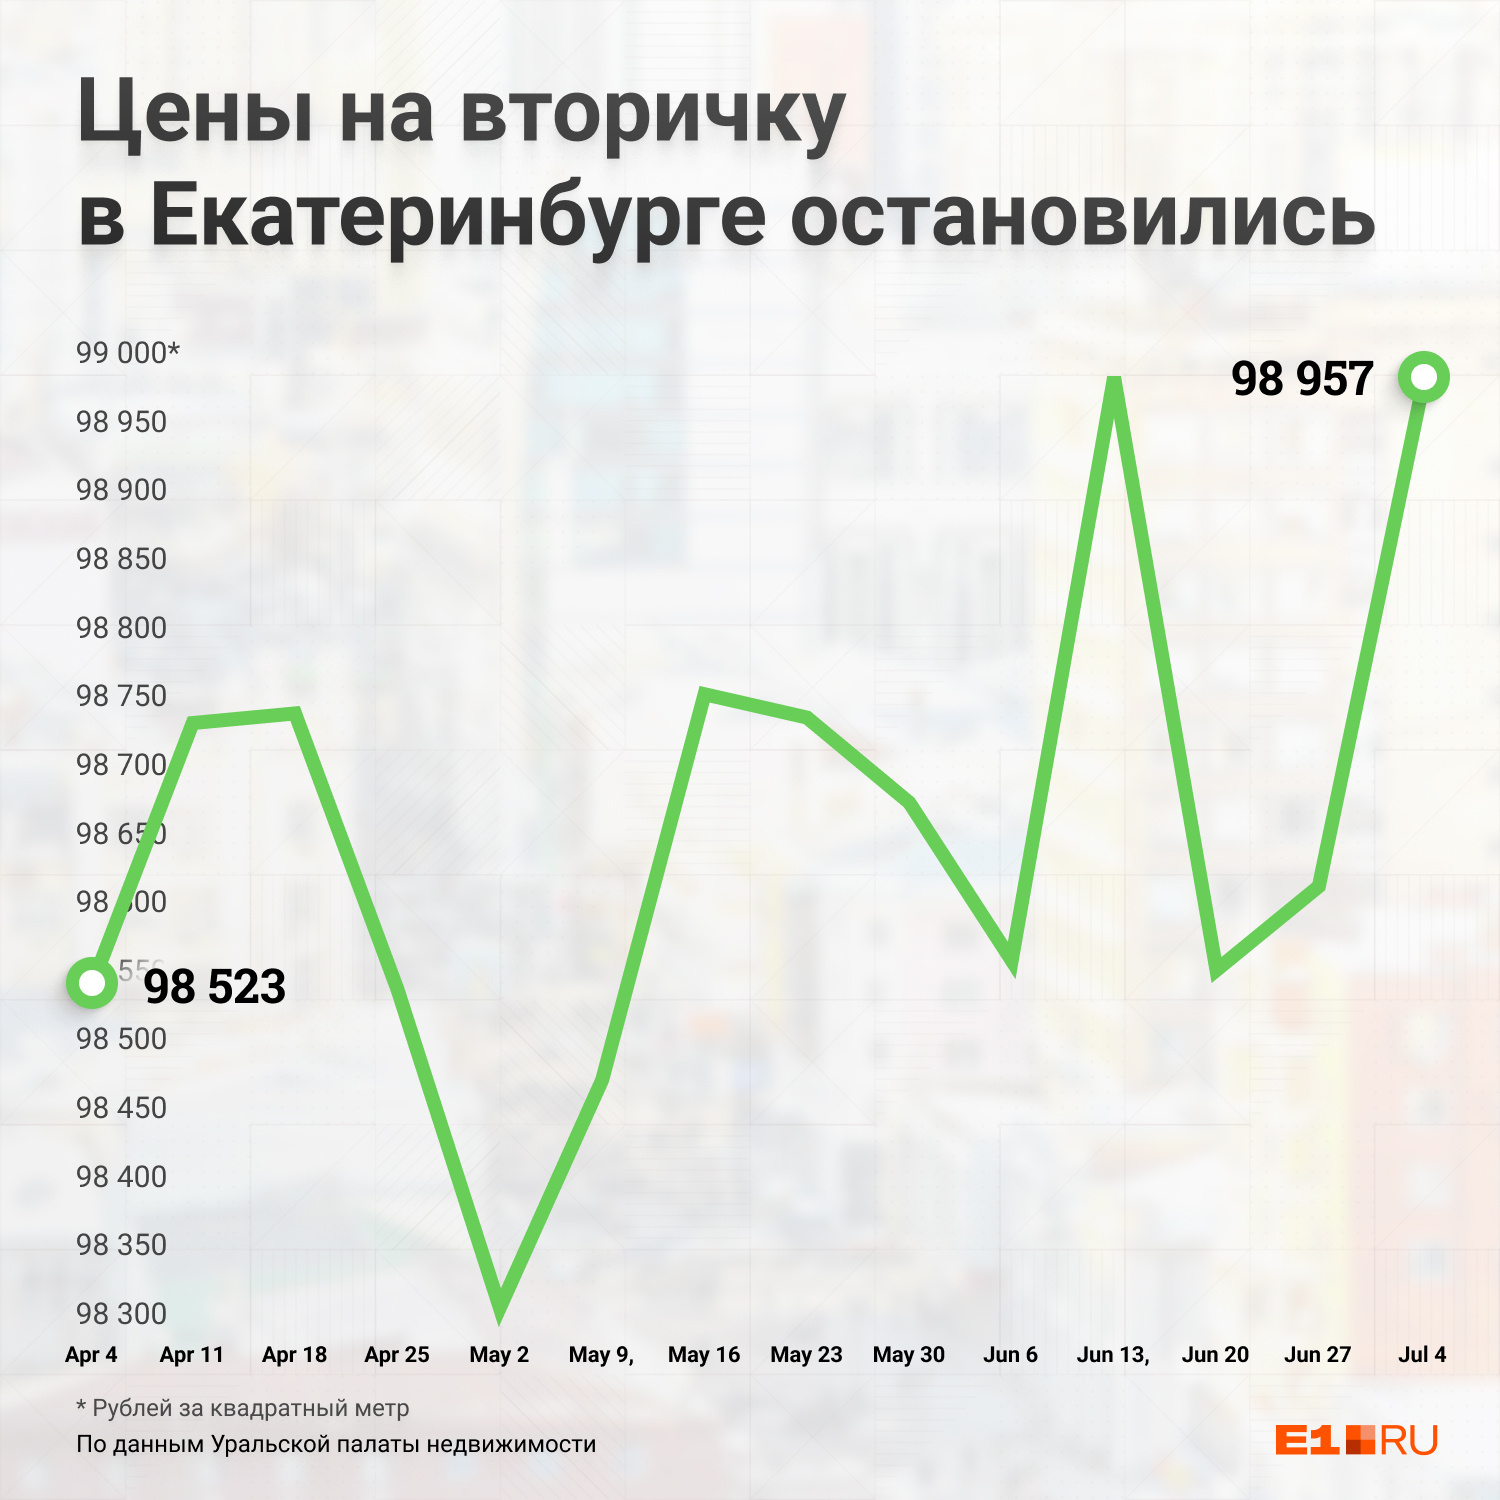 За последние месяцы общая цена на вторичное жилье практически не менялась. Она держится в диапазоне от 98 до 99 тысяч рублей за квадратный метр